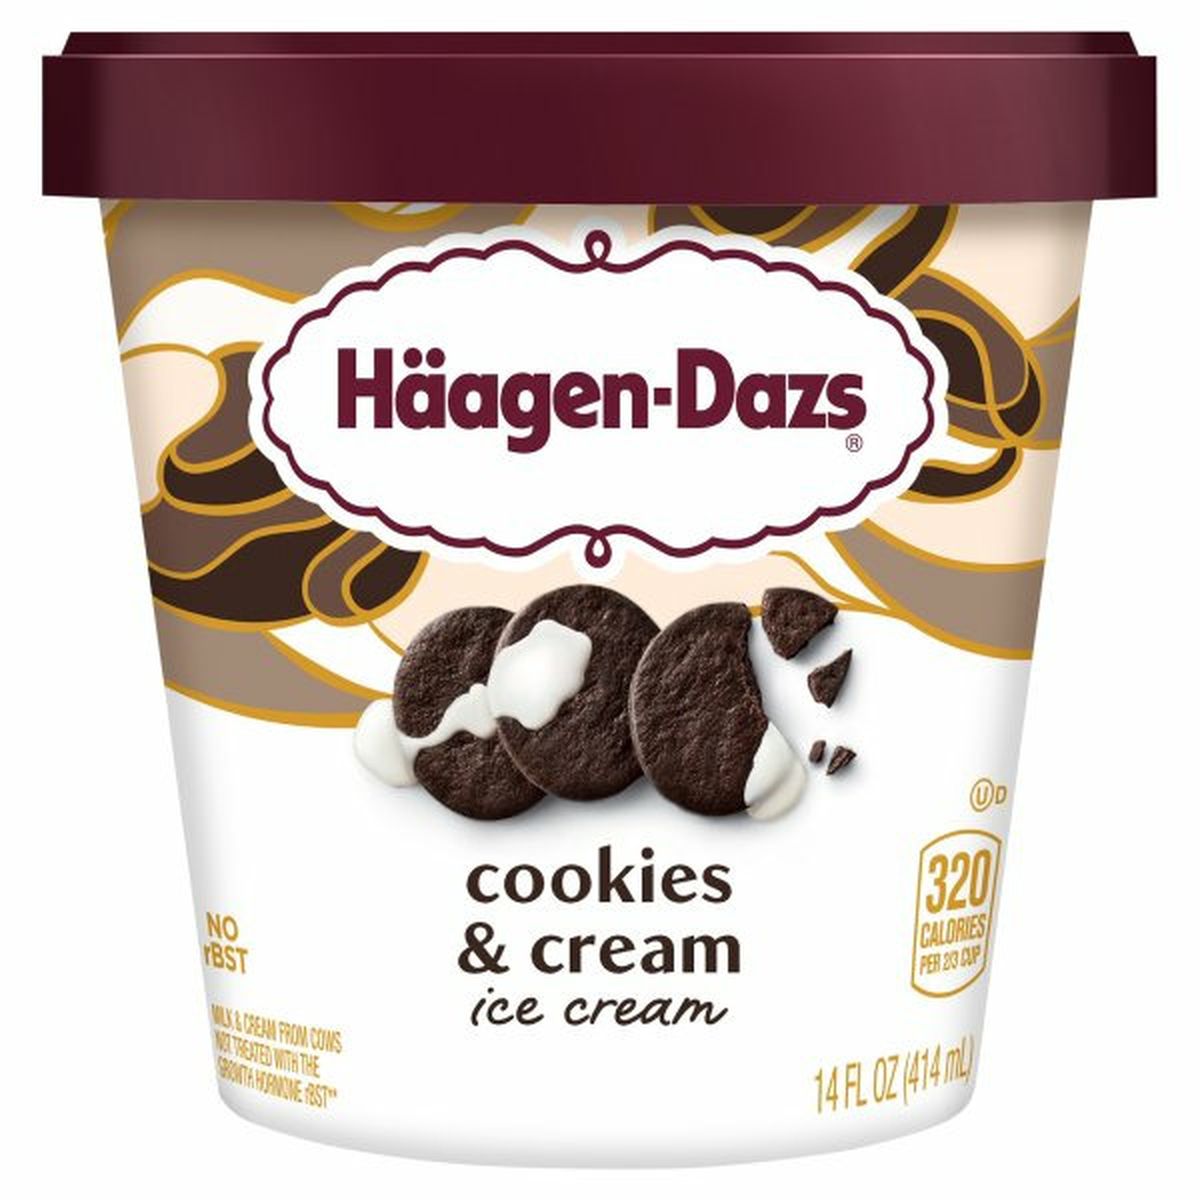 Calories in Haagen-Dazs Ice Cream, Cookies & Cream